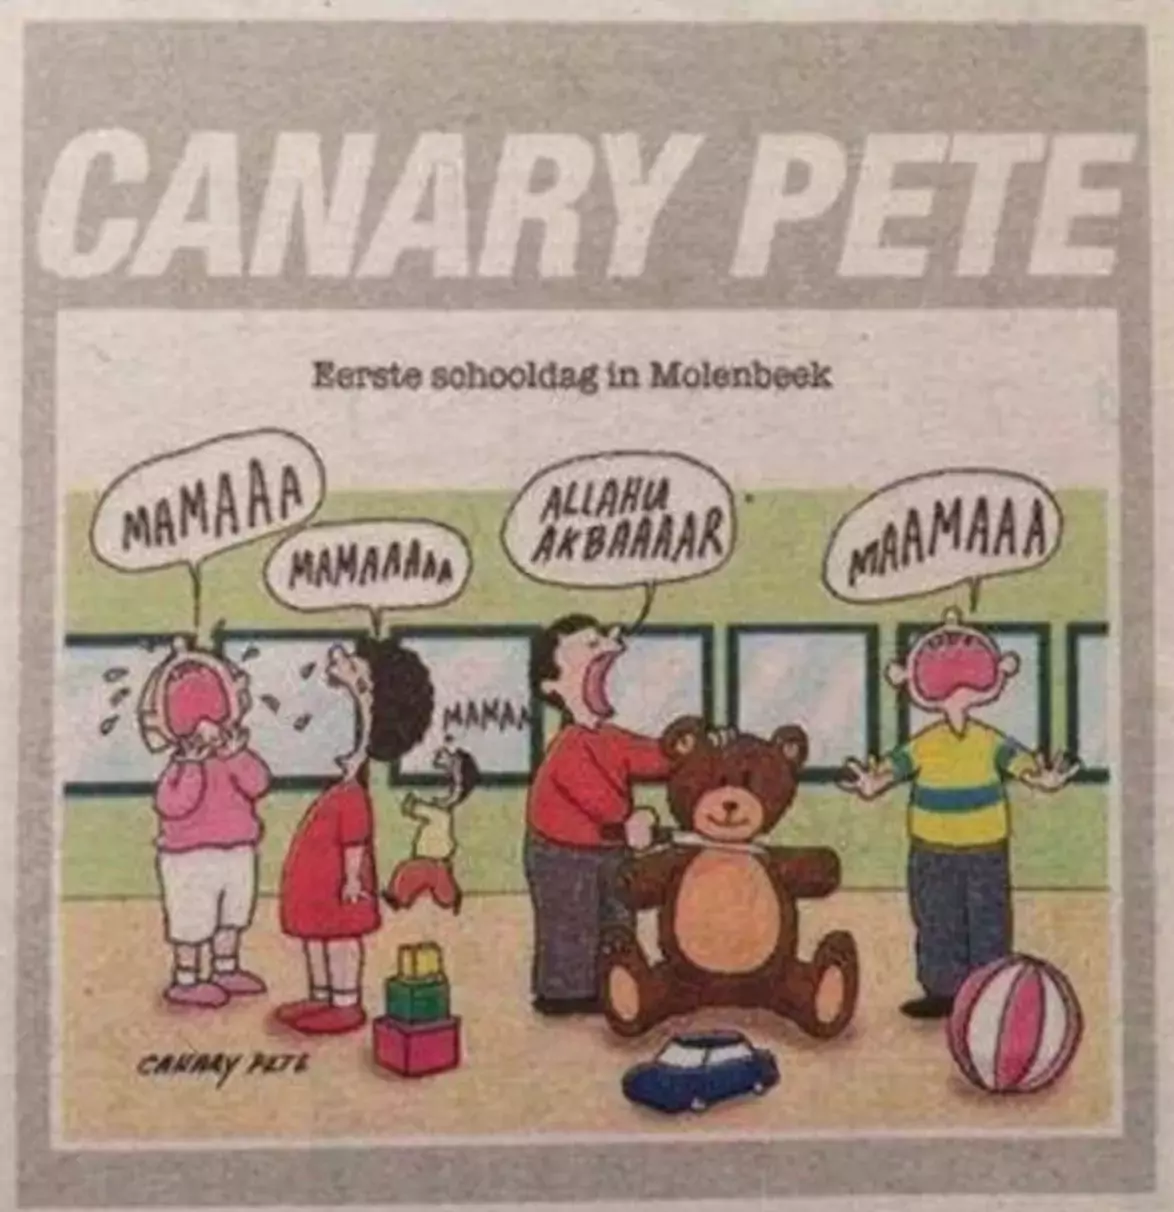 Caricature de Canary Pete sur les enfants musulmans en maternelle